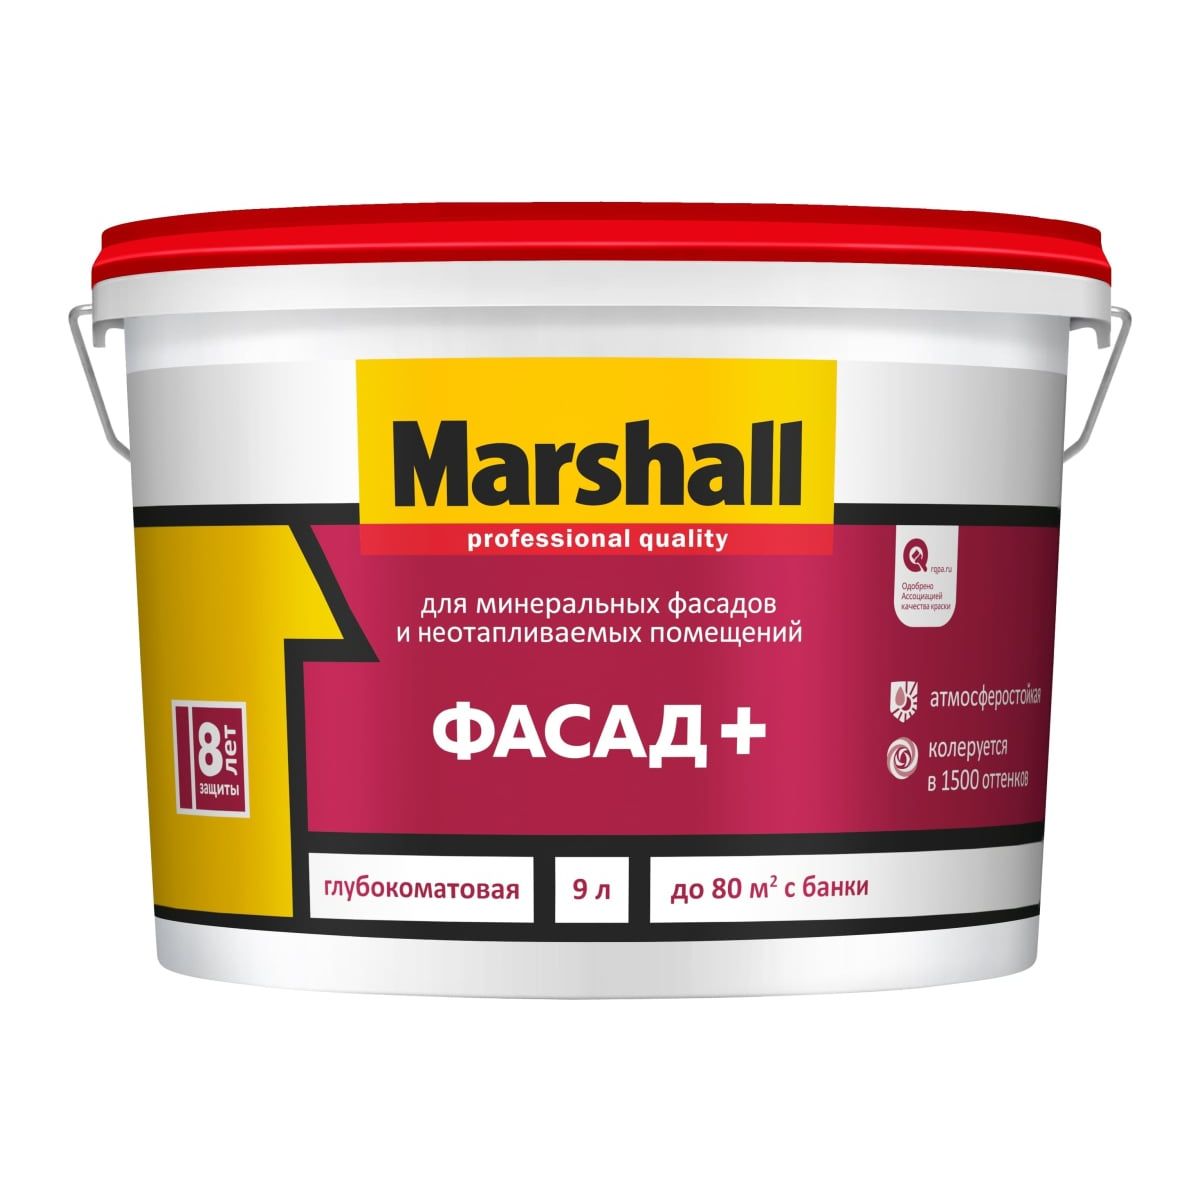 краска marshall фасад глубокоматовая база bc 9 л Краска Marshall Фасад+ , глубокоматовая, база BW, 9 л